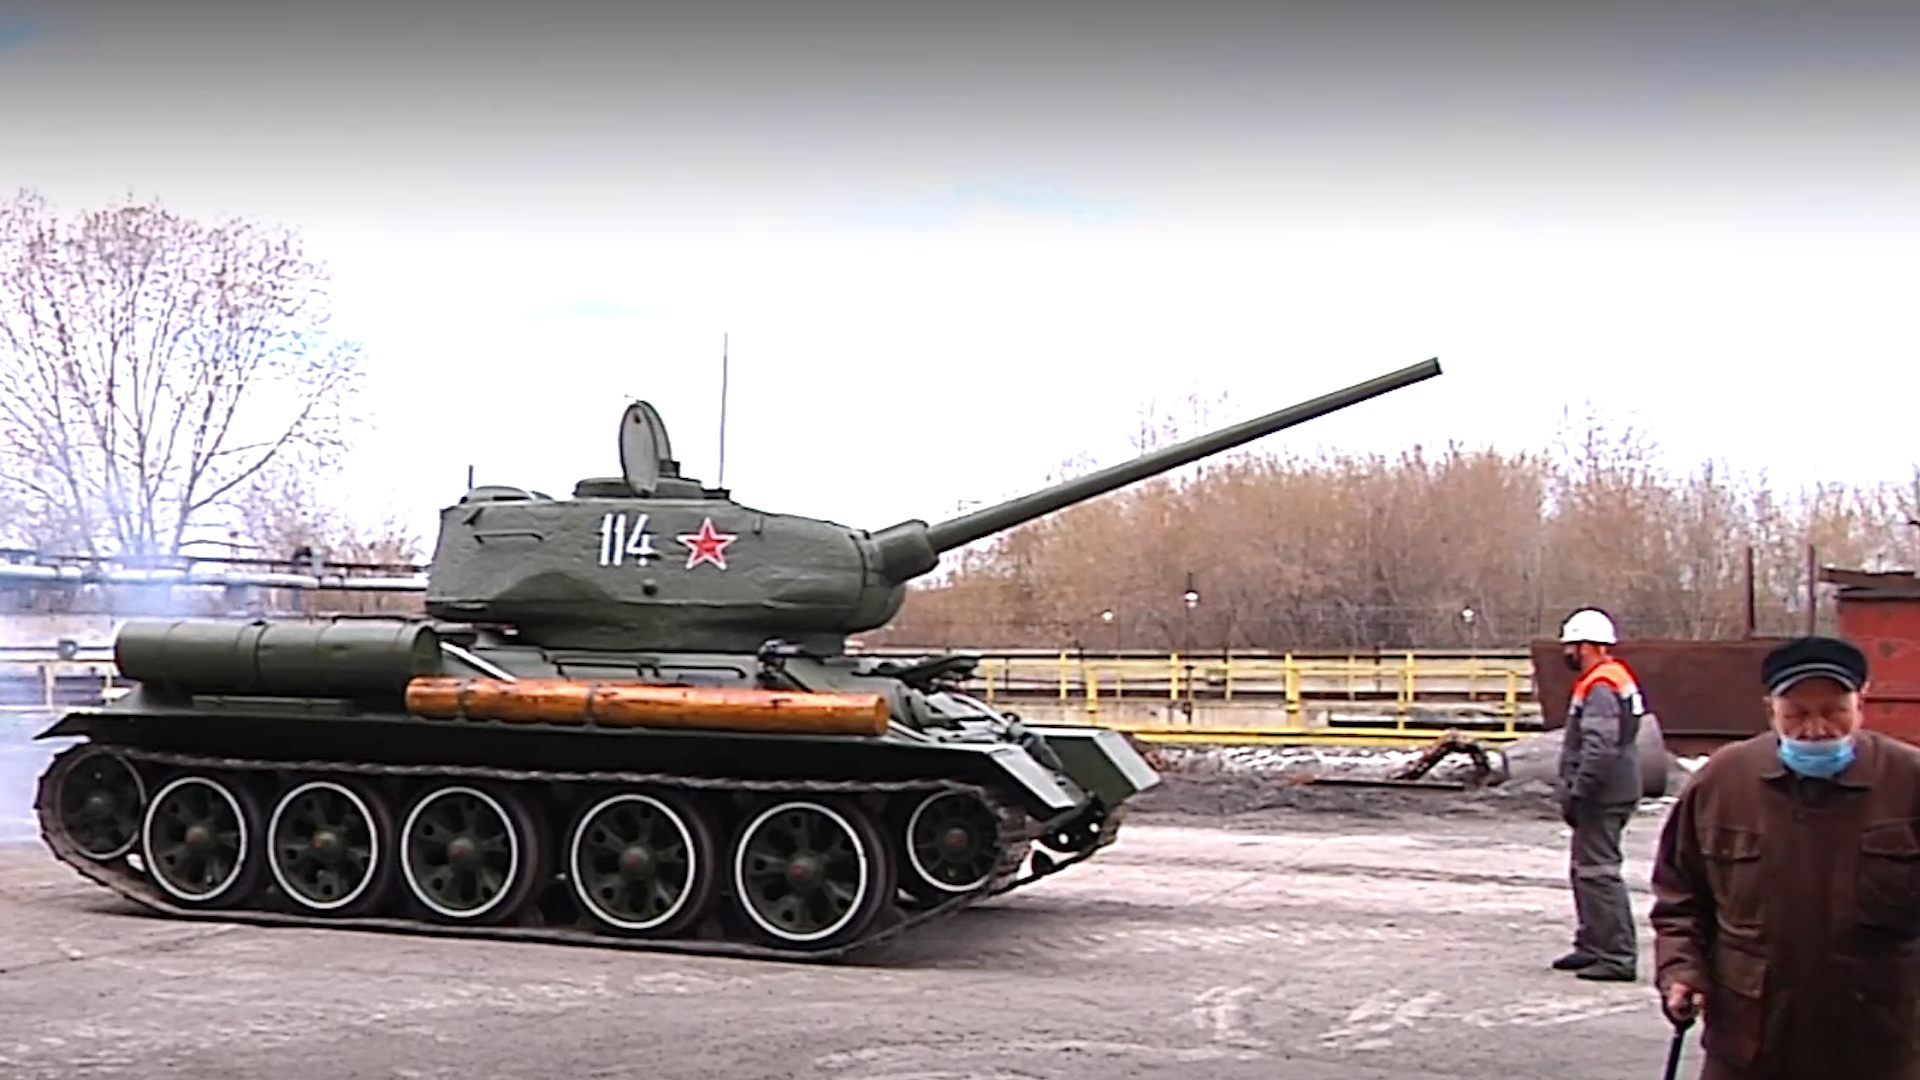 "Изъянов нет": Ветеран проверил состояние танка Т-34 перед парадом в Новокузнецке